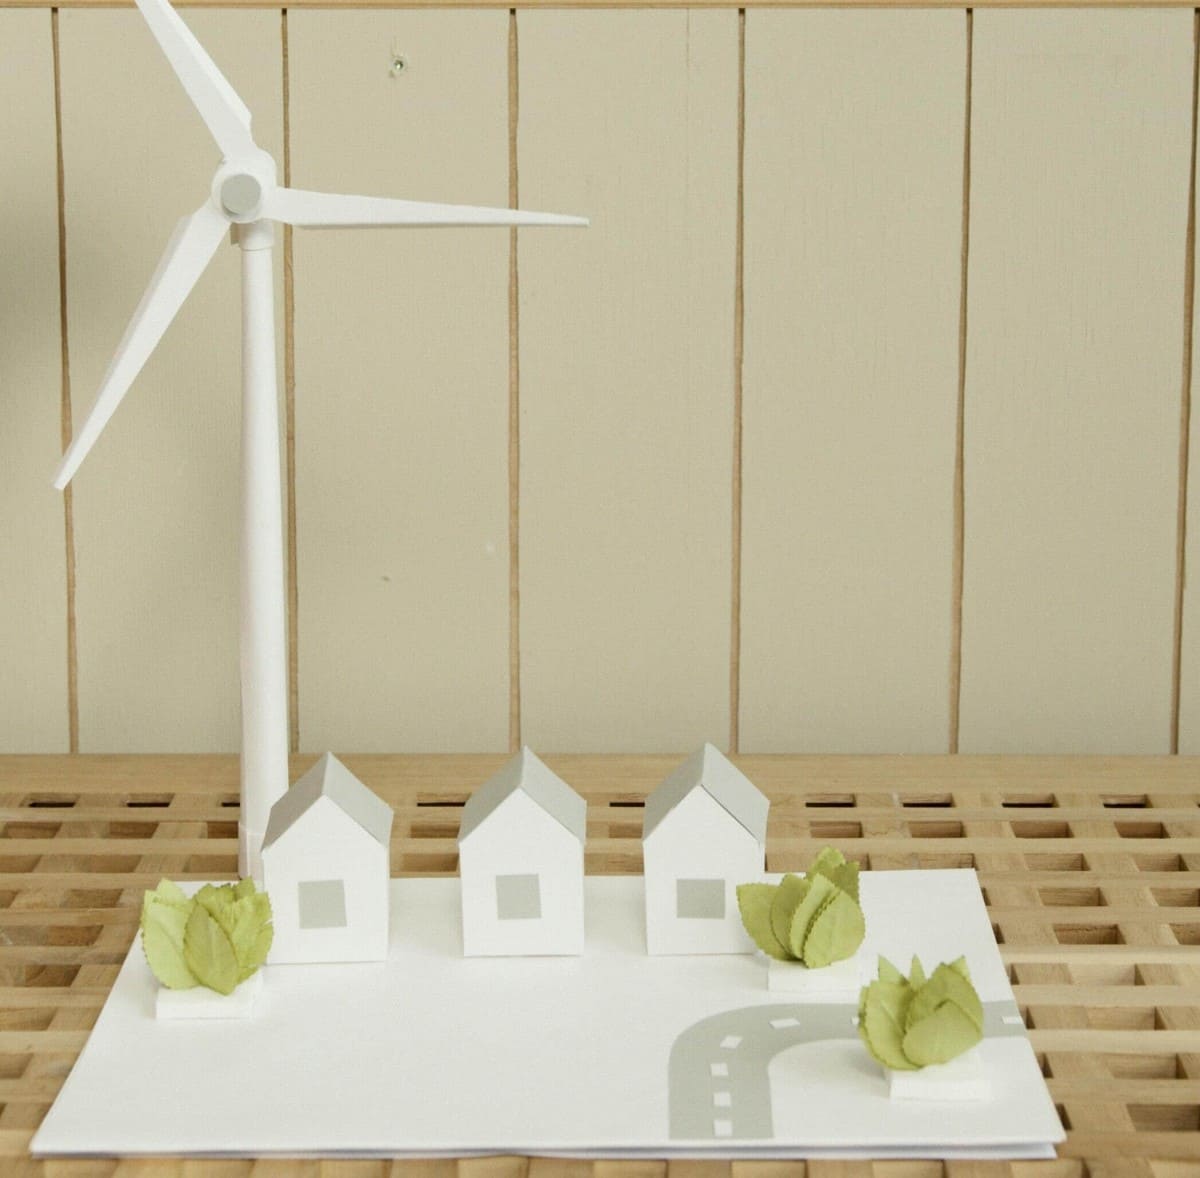 Maquette d'un quartier pavillonnaire alimenté en électricité grâce à un éolienne